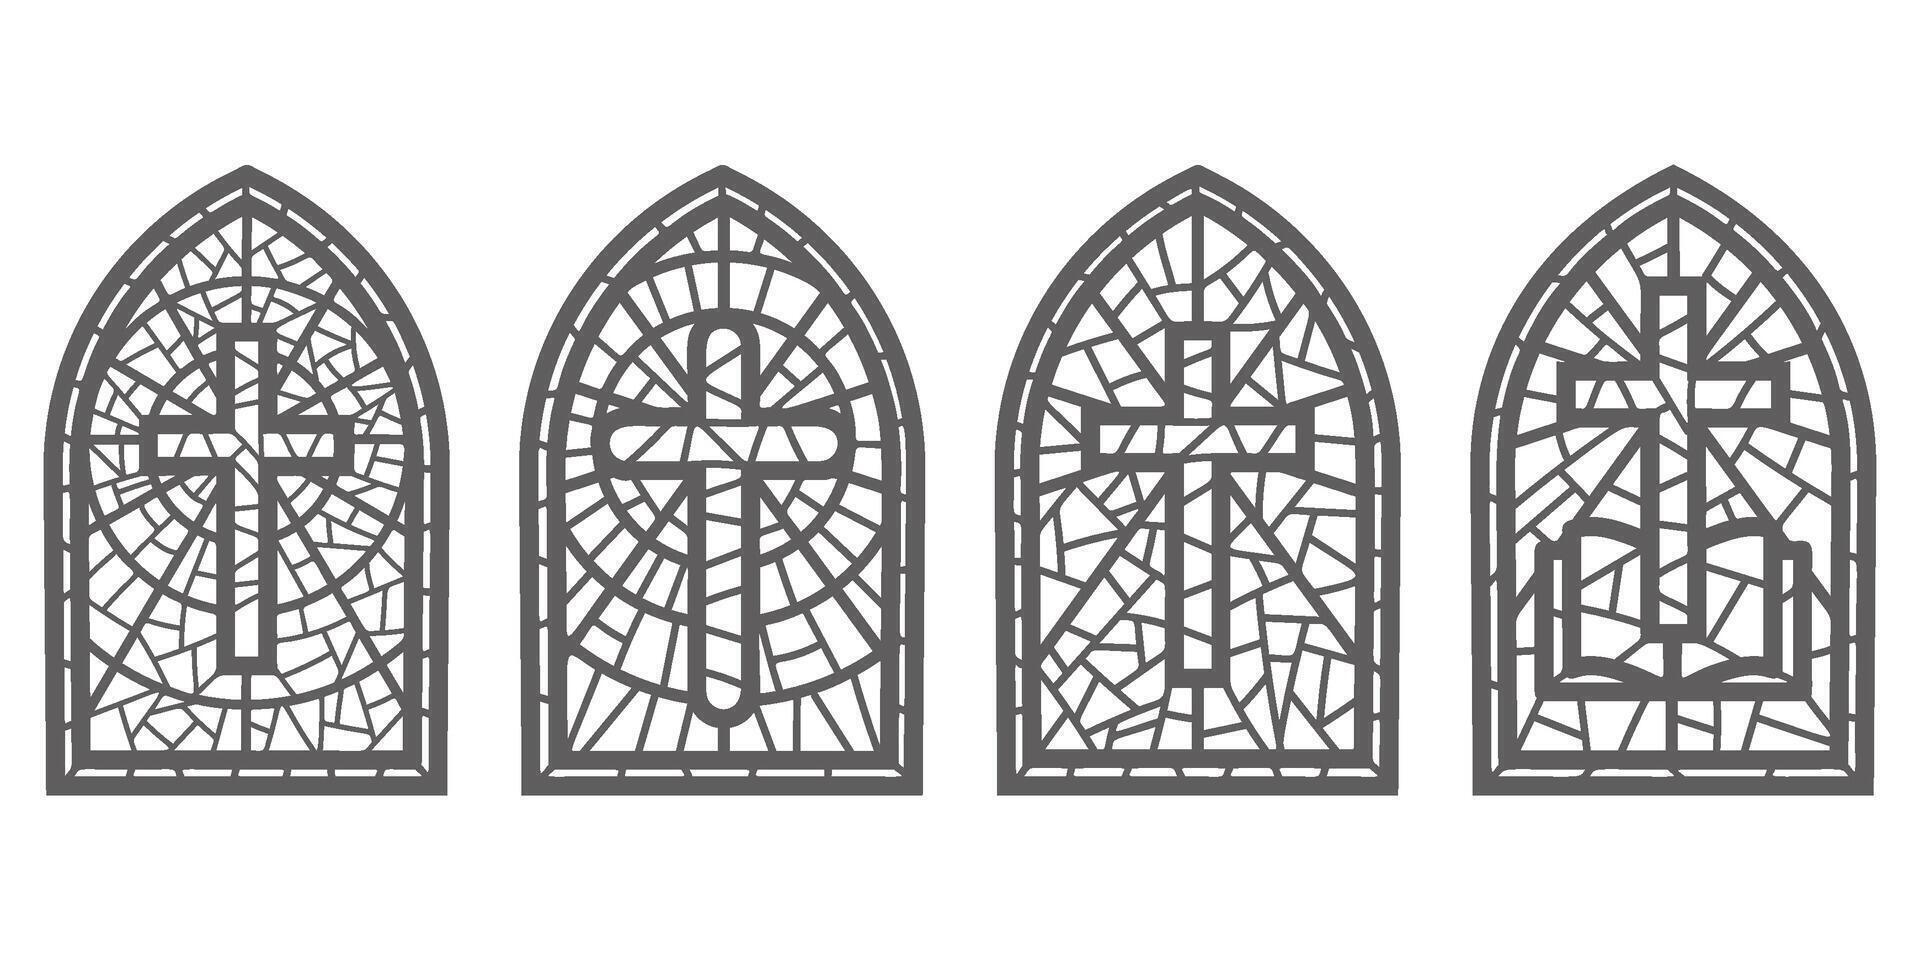 Iglesia vaso ventanas manchado mosaico católico y cristiano marcos con cruzar. vector contorno gótico medieval arcos aislado en blanco antecedentes